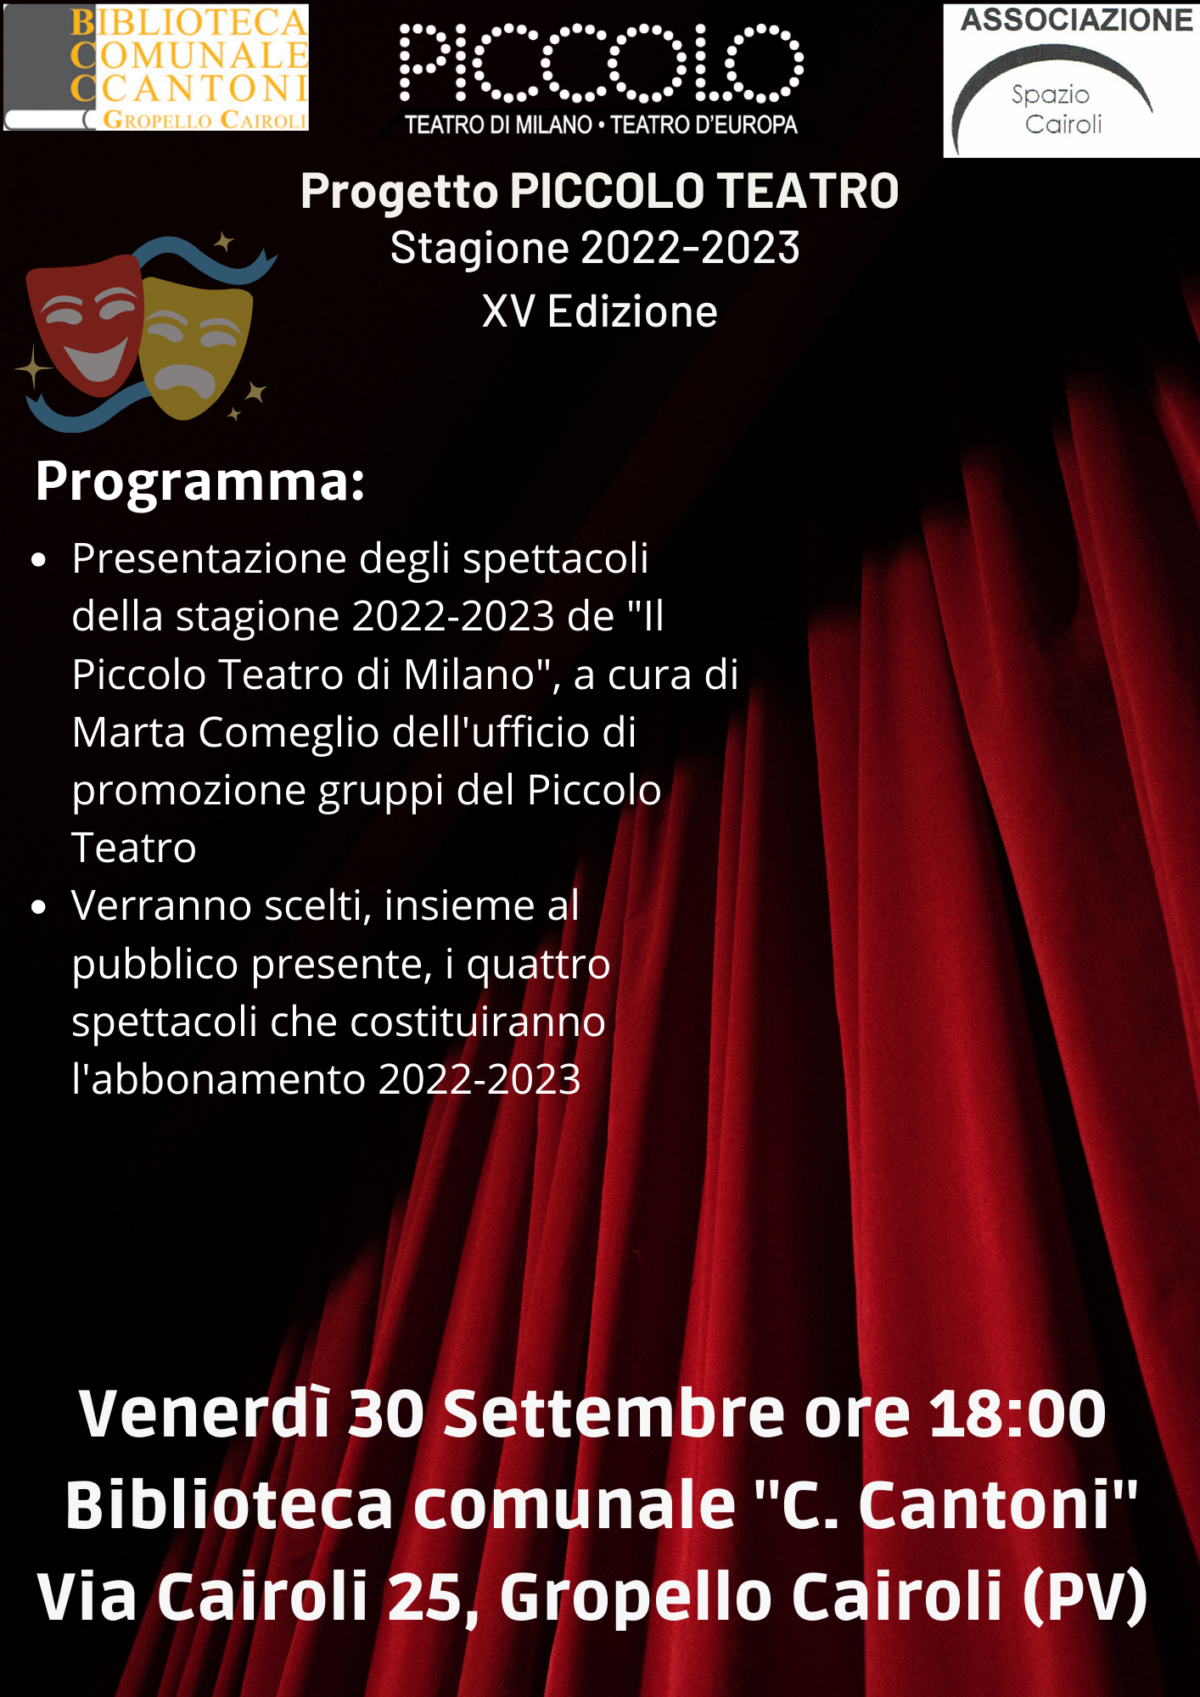 Biblioteca: venerdì 30 settembre ore 18,00 Presentazione Progetto Piccolo Teatro 2022-2023, XV edizione